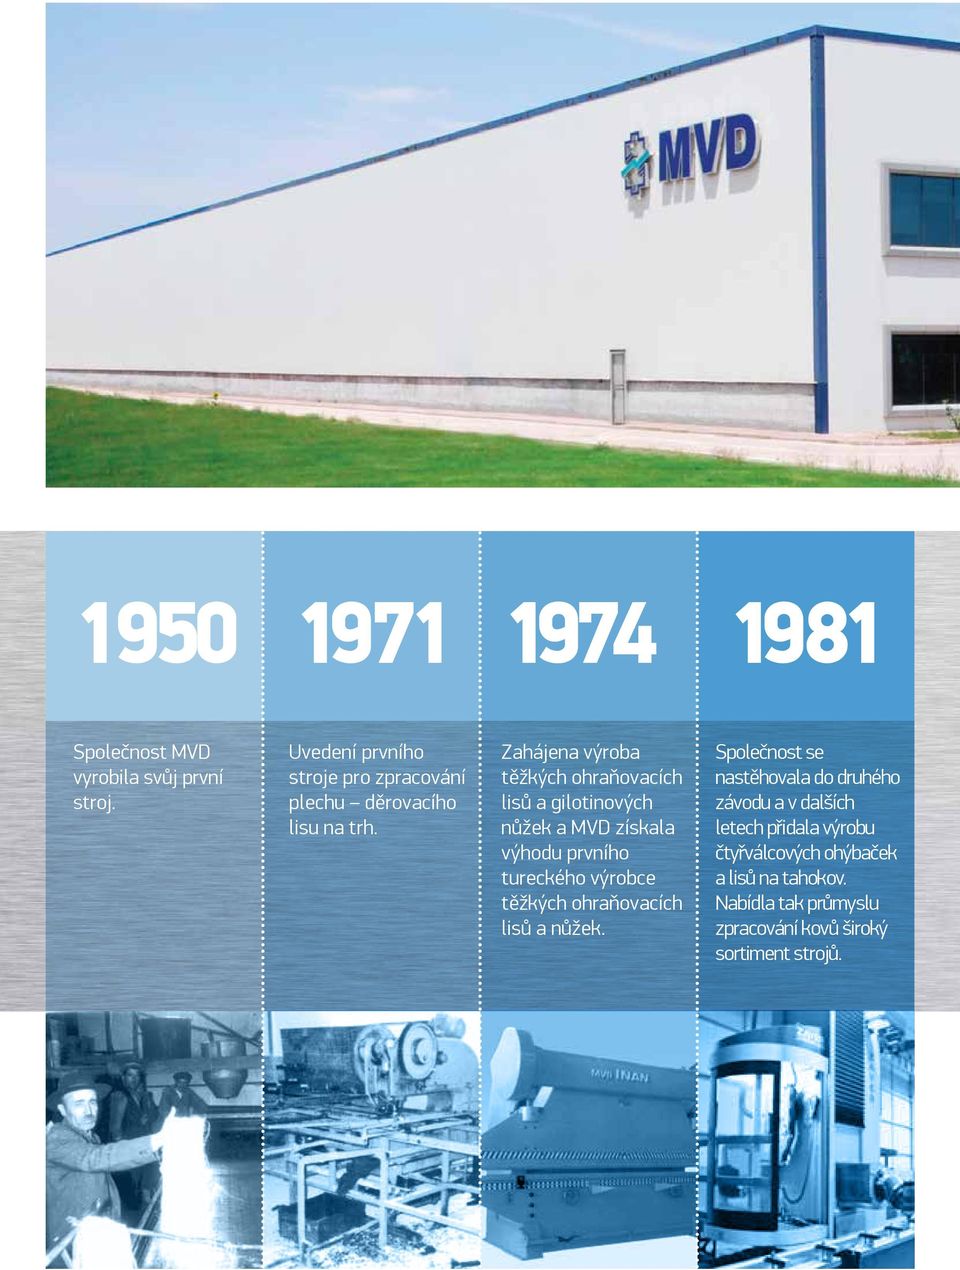 Zahájena výroba těžkých ohraňovacích lisů a gilotinových nůžek a MVD získala výhodu prvního tureckého výrobce